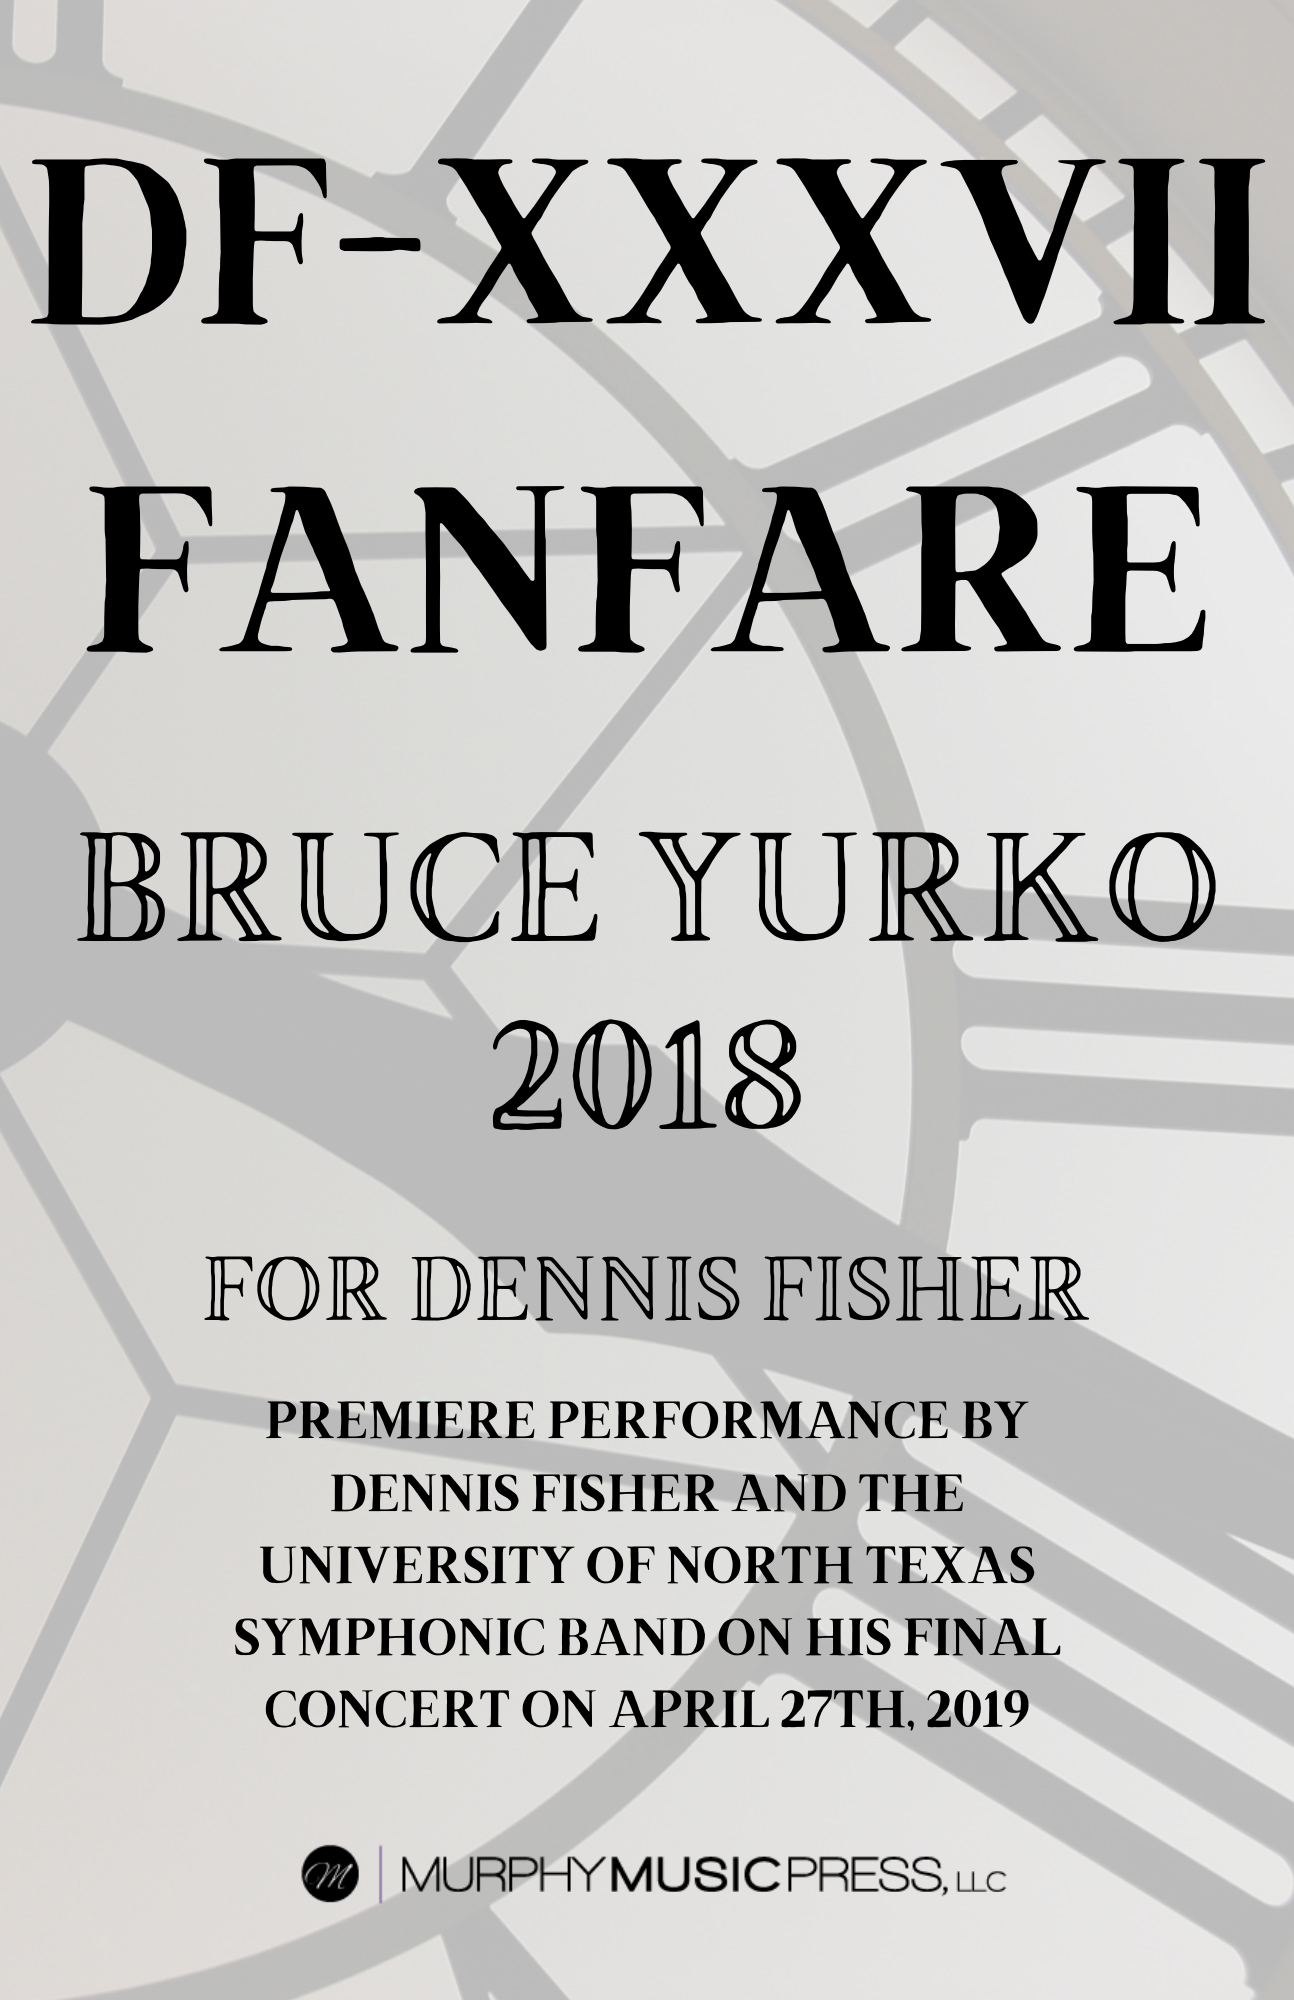 DF-XXXVII Fanfare (Score Only) by Bruce Yurko